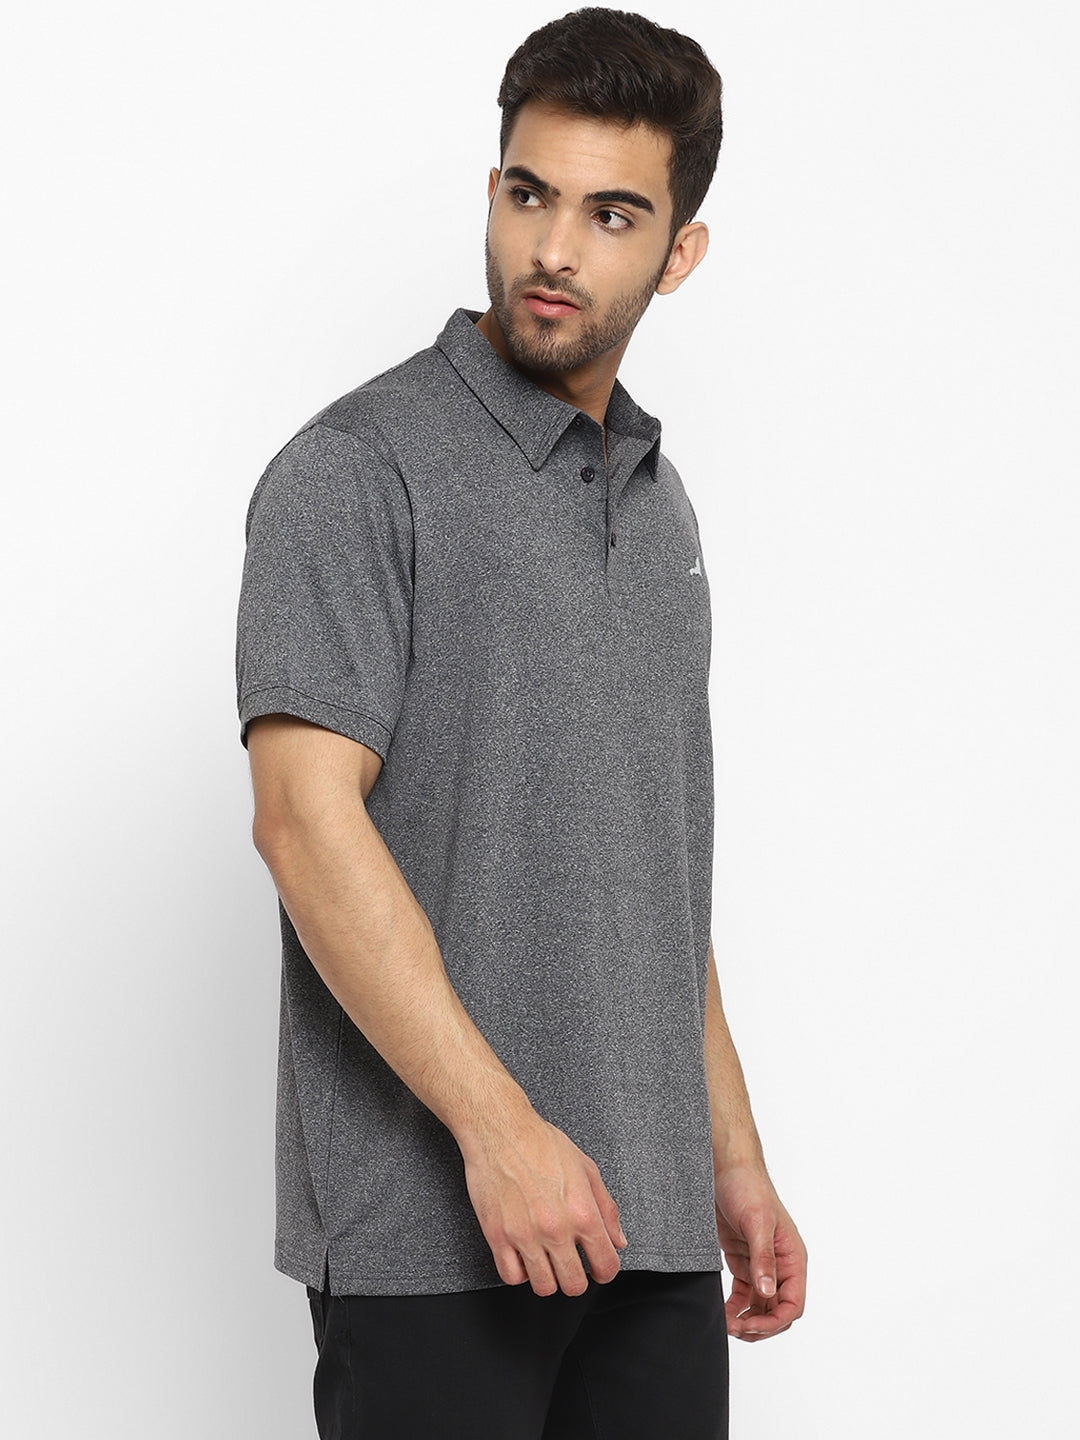 Men's V-Neck Sports T-Shirt (Pack of 2) - Blue & Grey